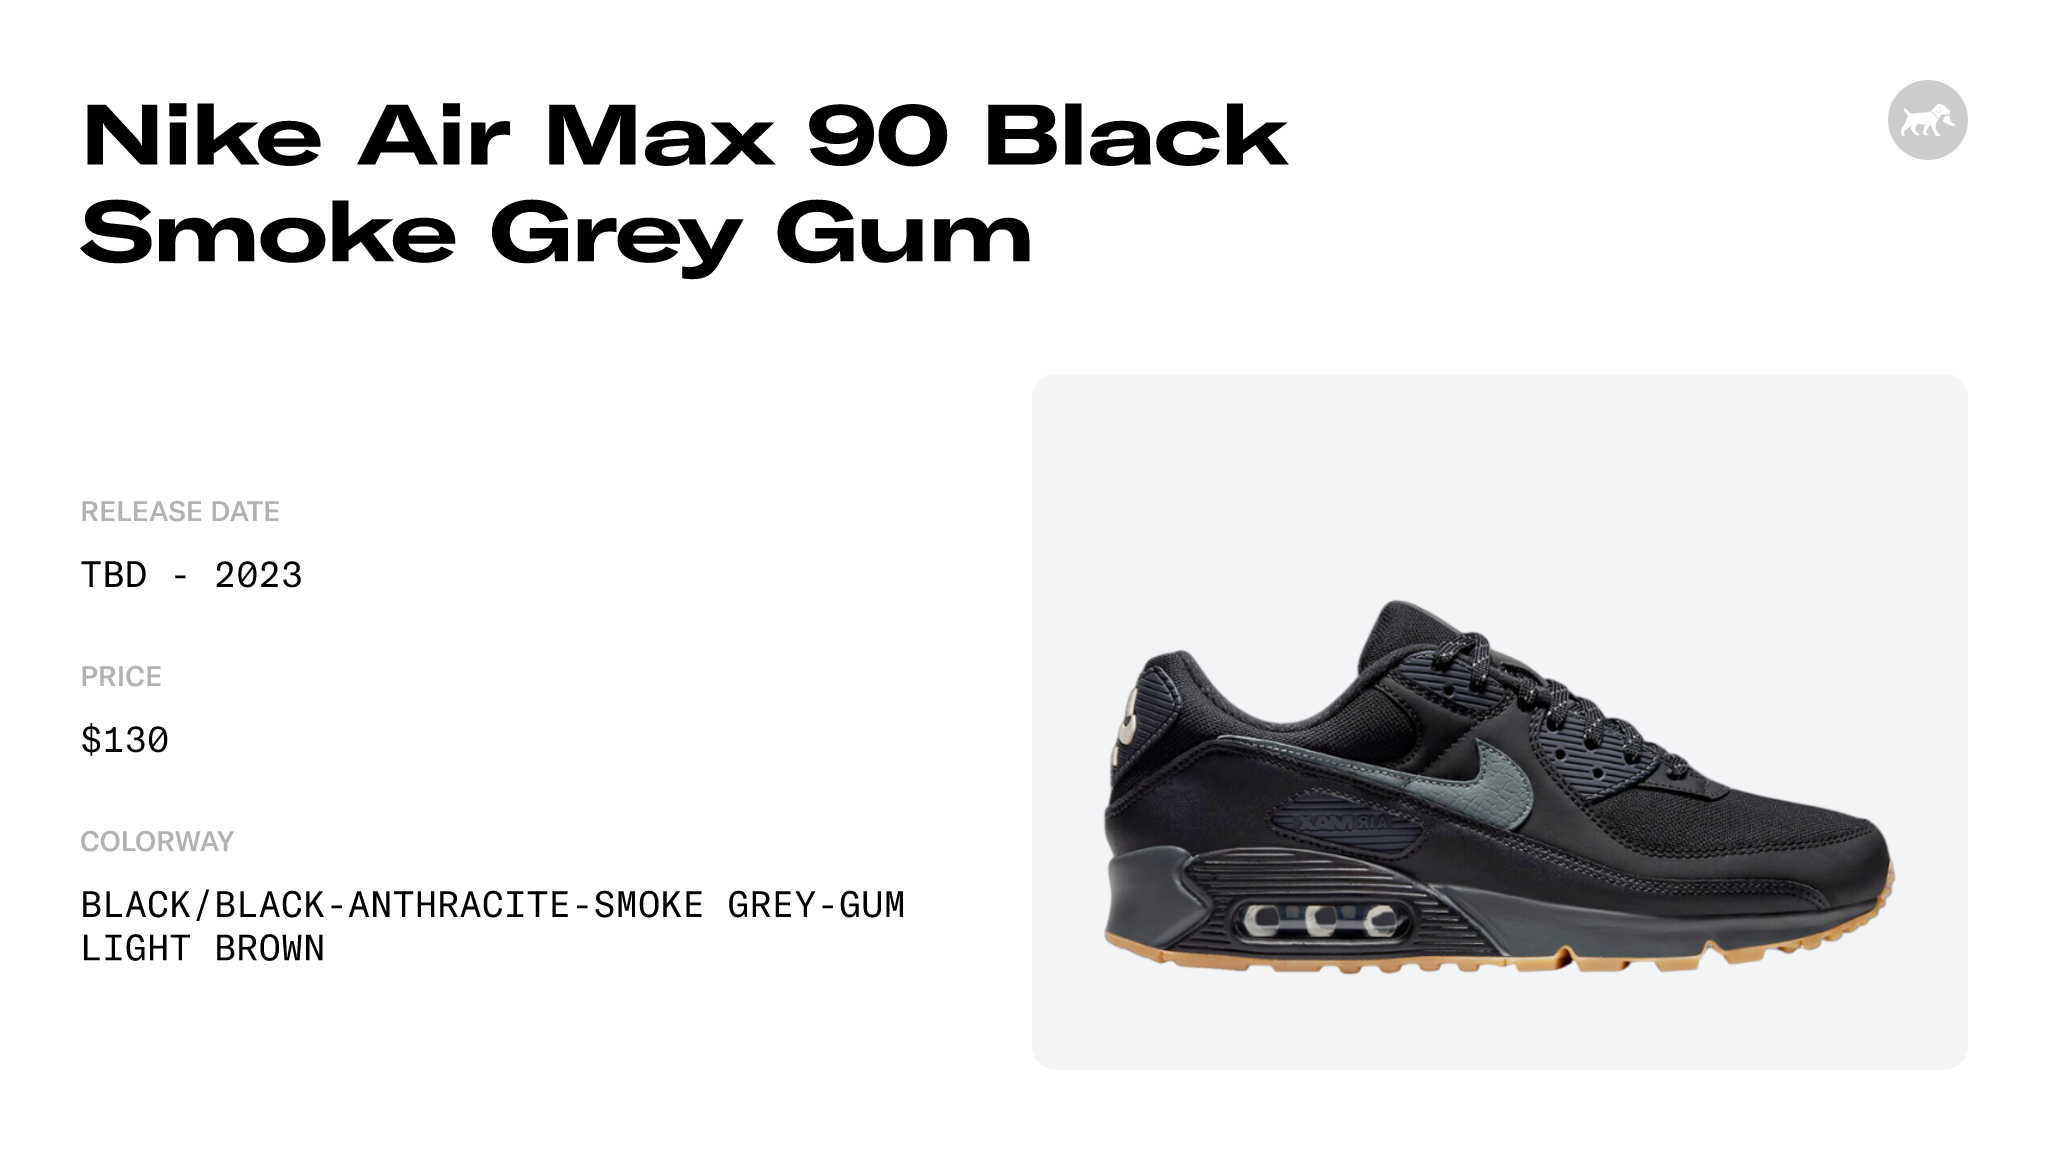 Nike Air Max 90 Black/Gum FV0387-001 Release Date